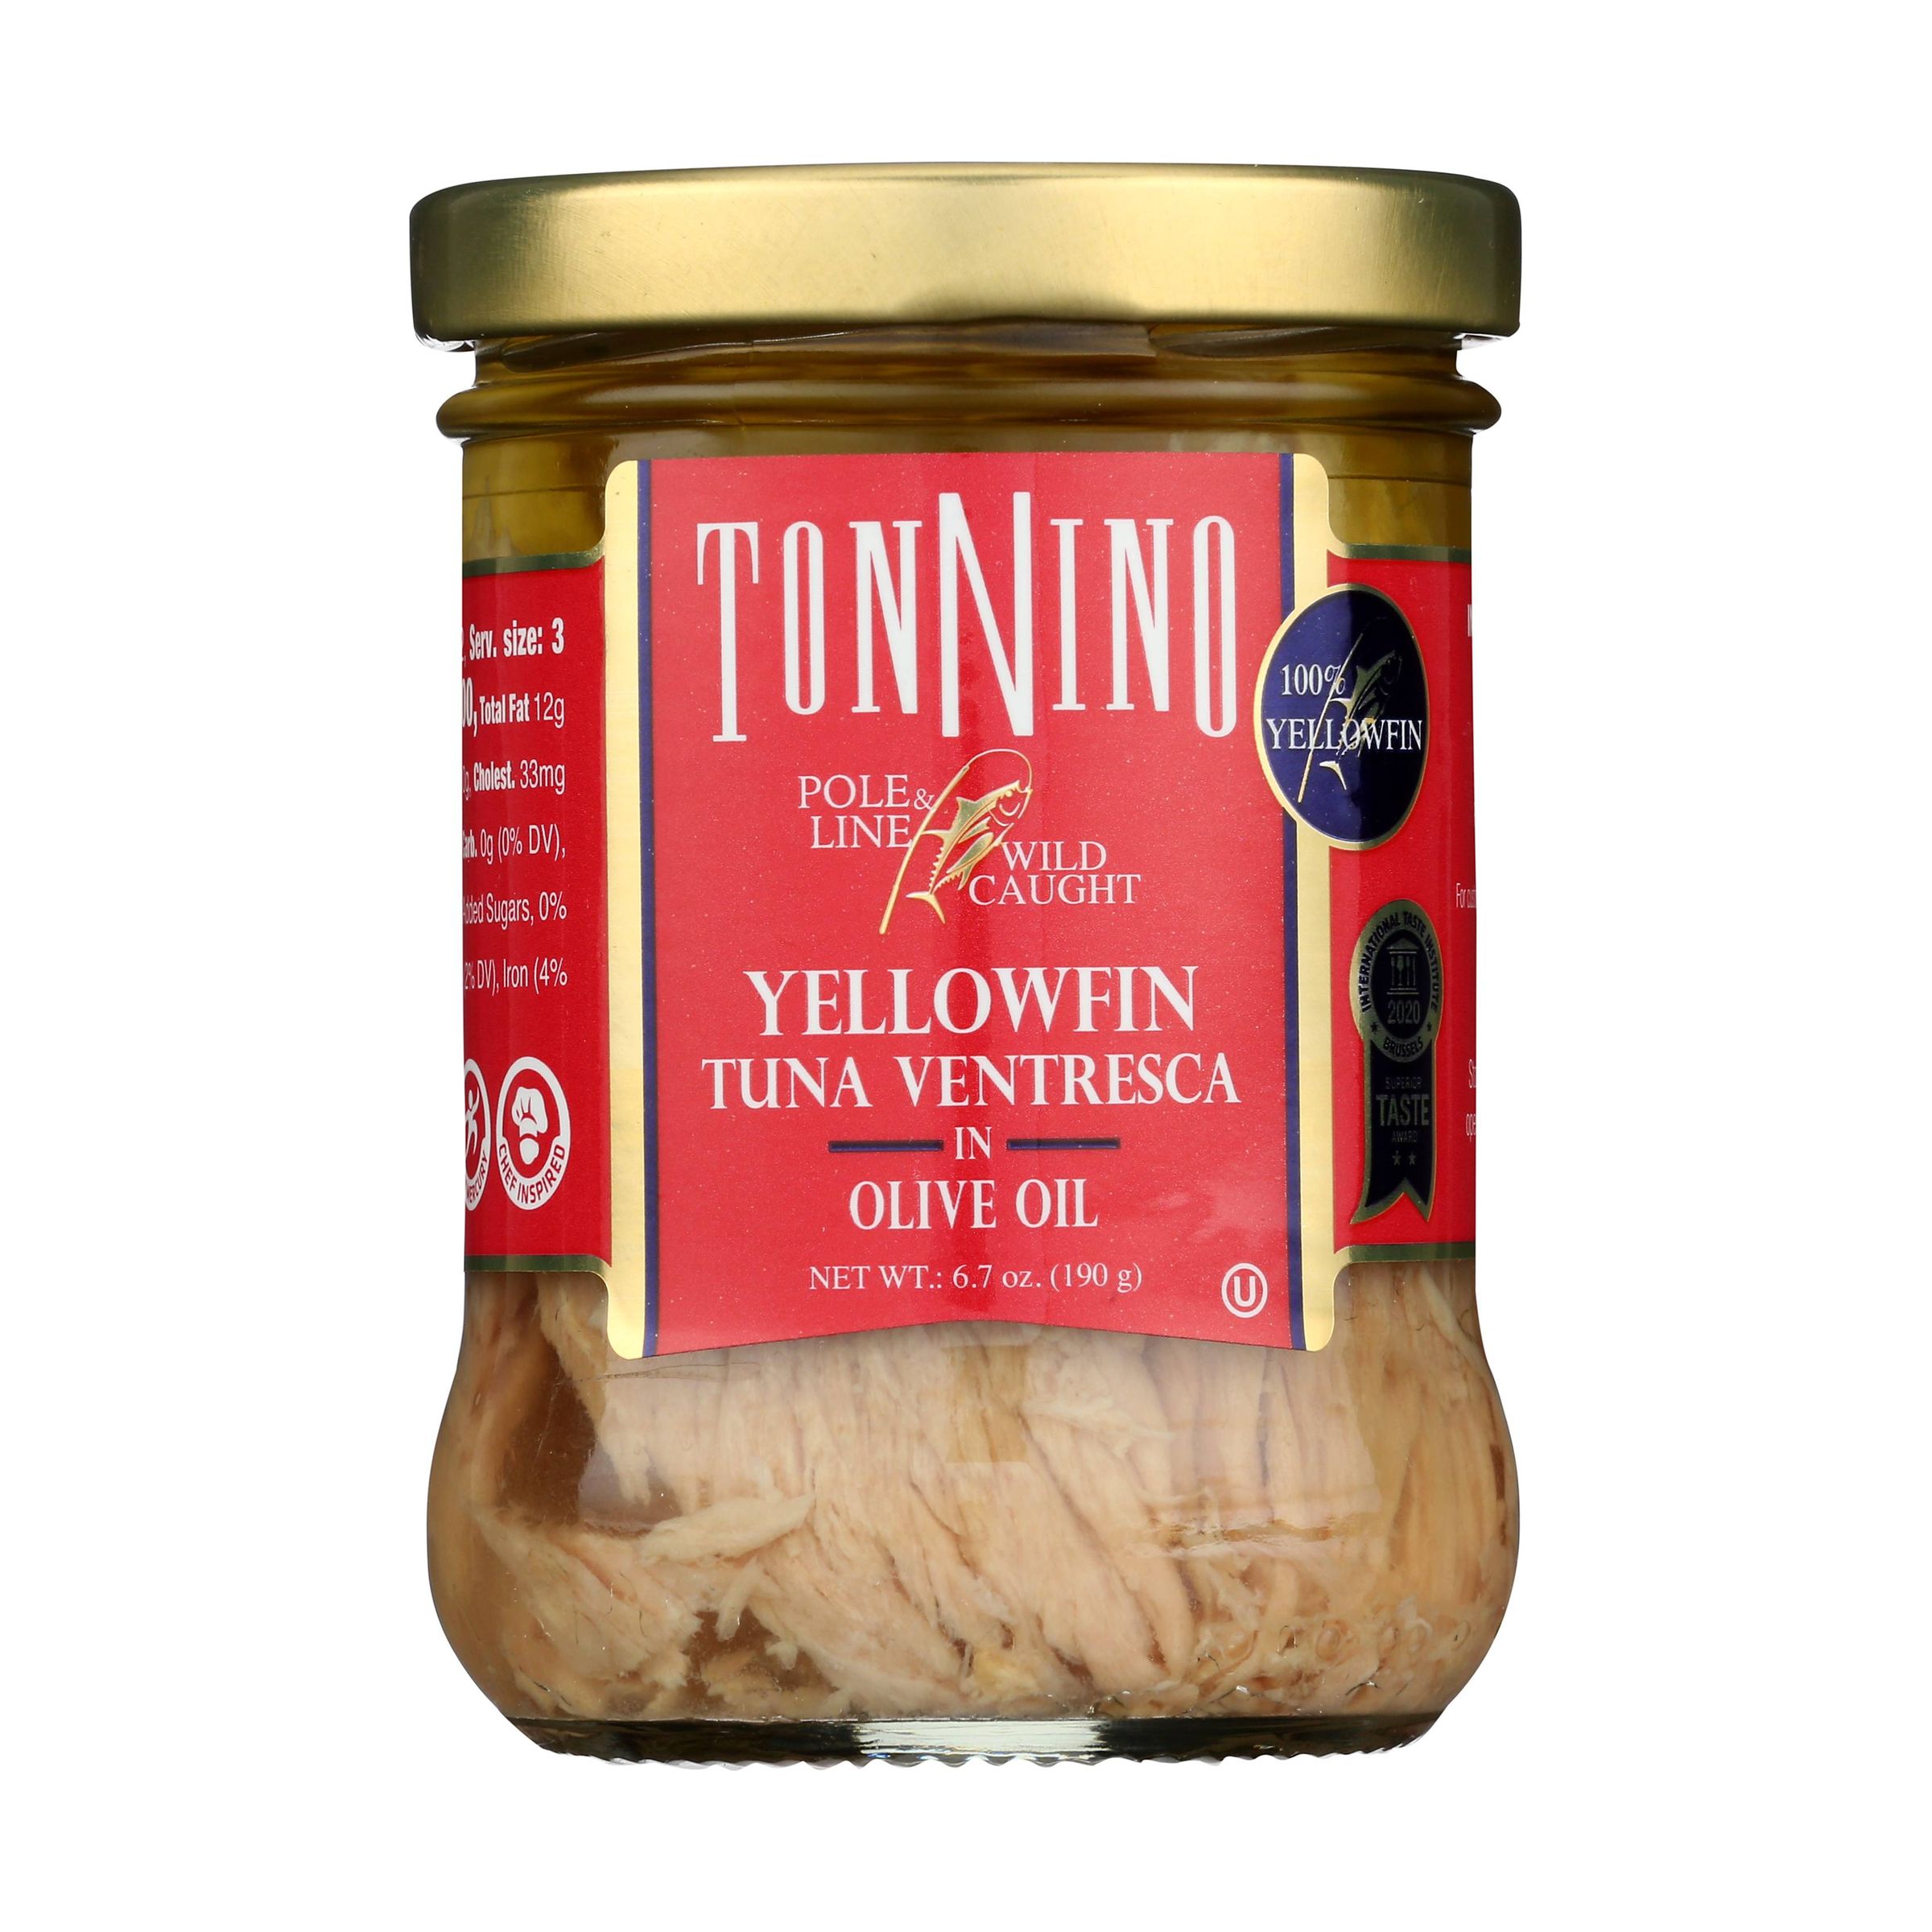 Yellowfin Tuna Ventresca in Olive Oil P&L 9514